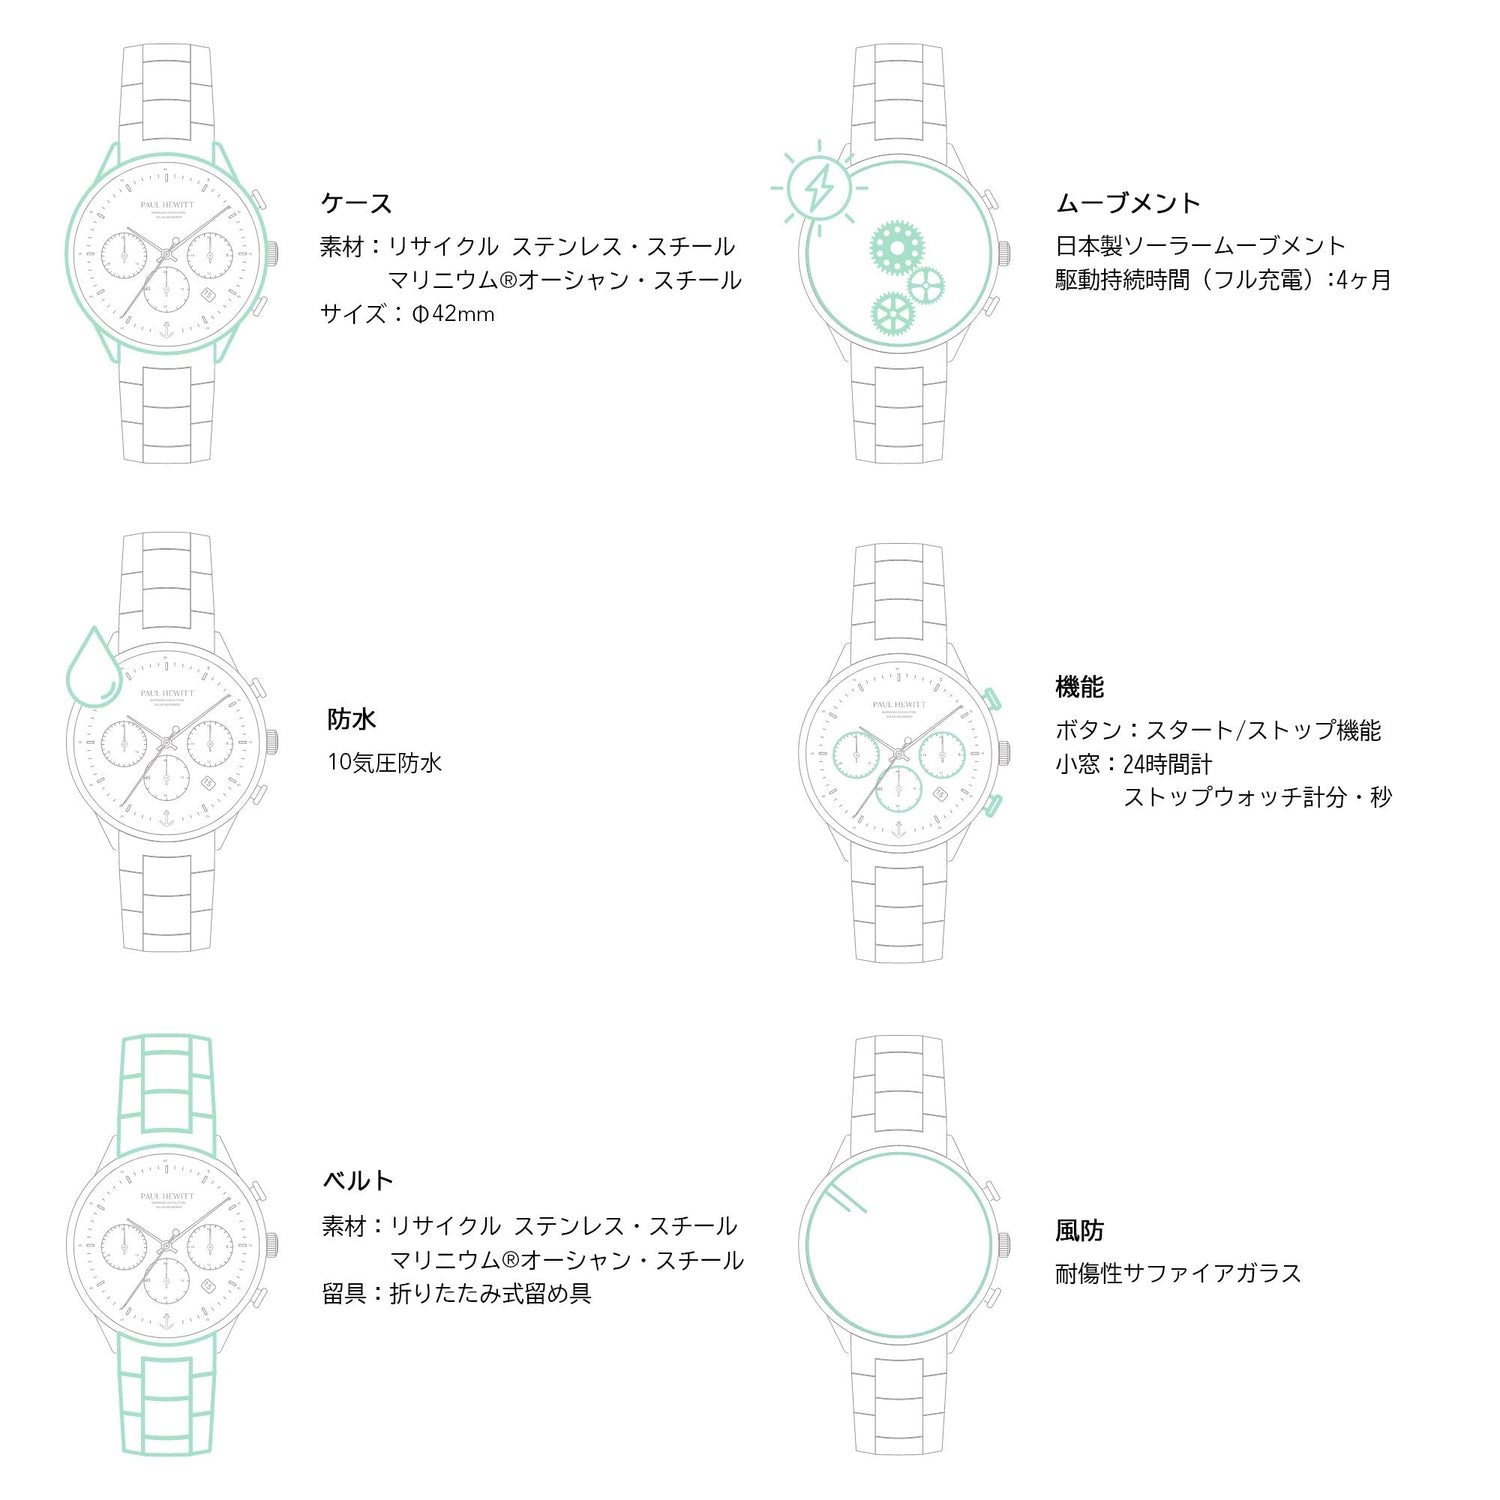 Chrono Watch シルバーブラック - ポールヒューイット日本公式サイト